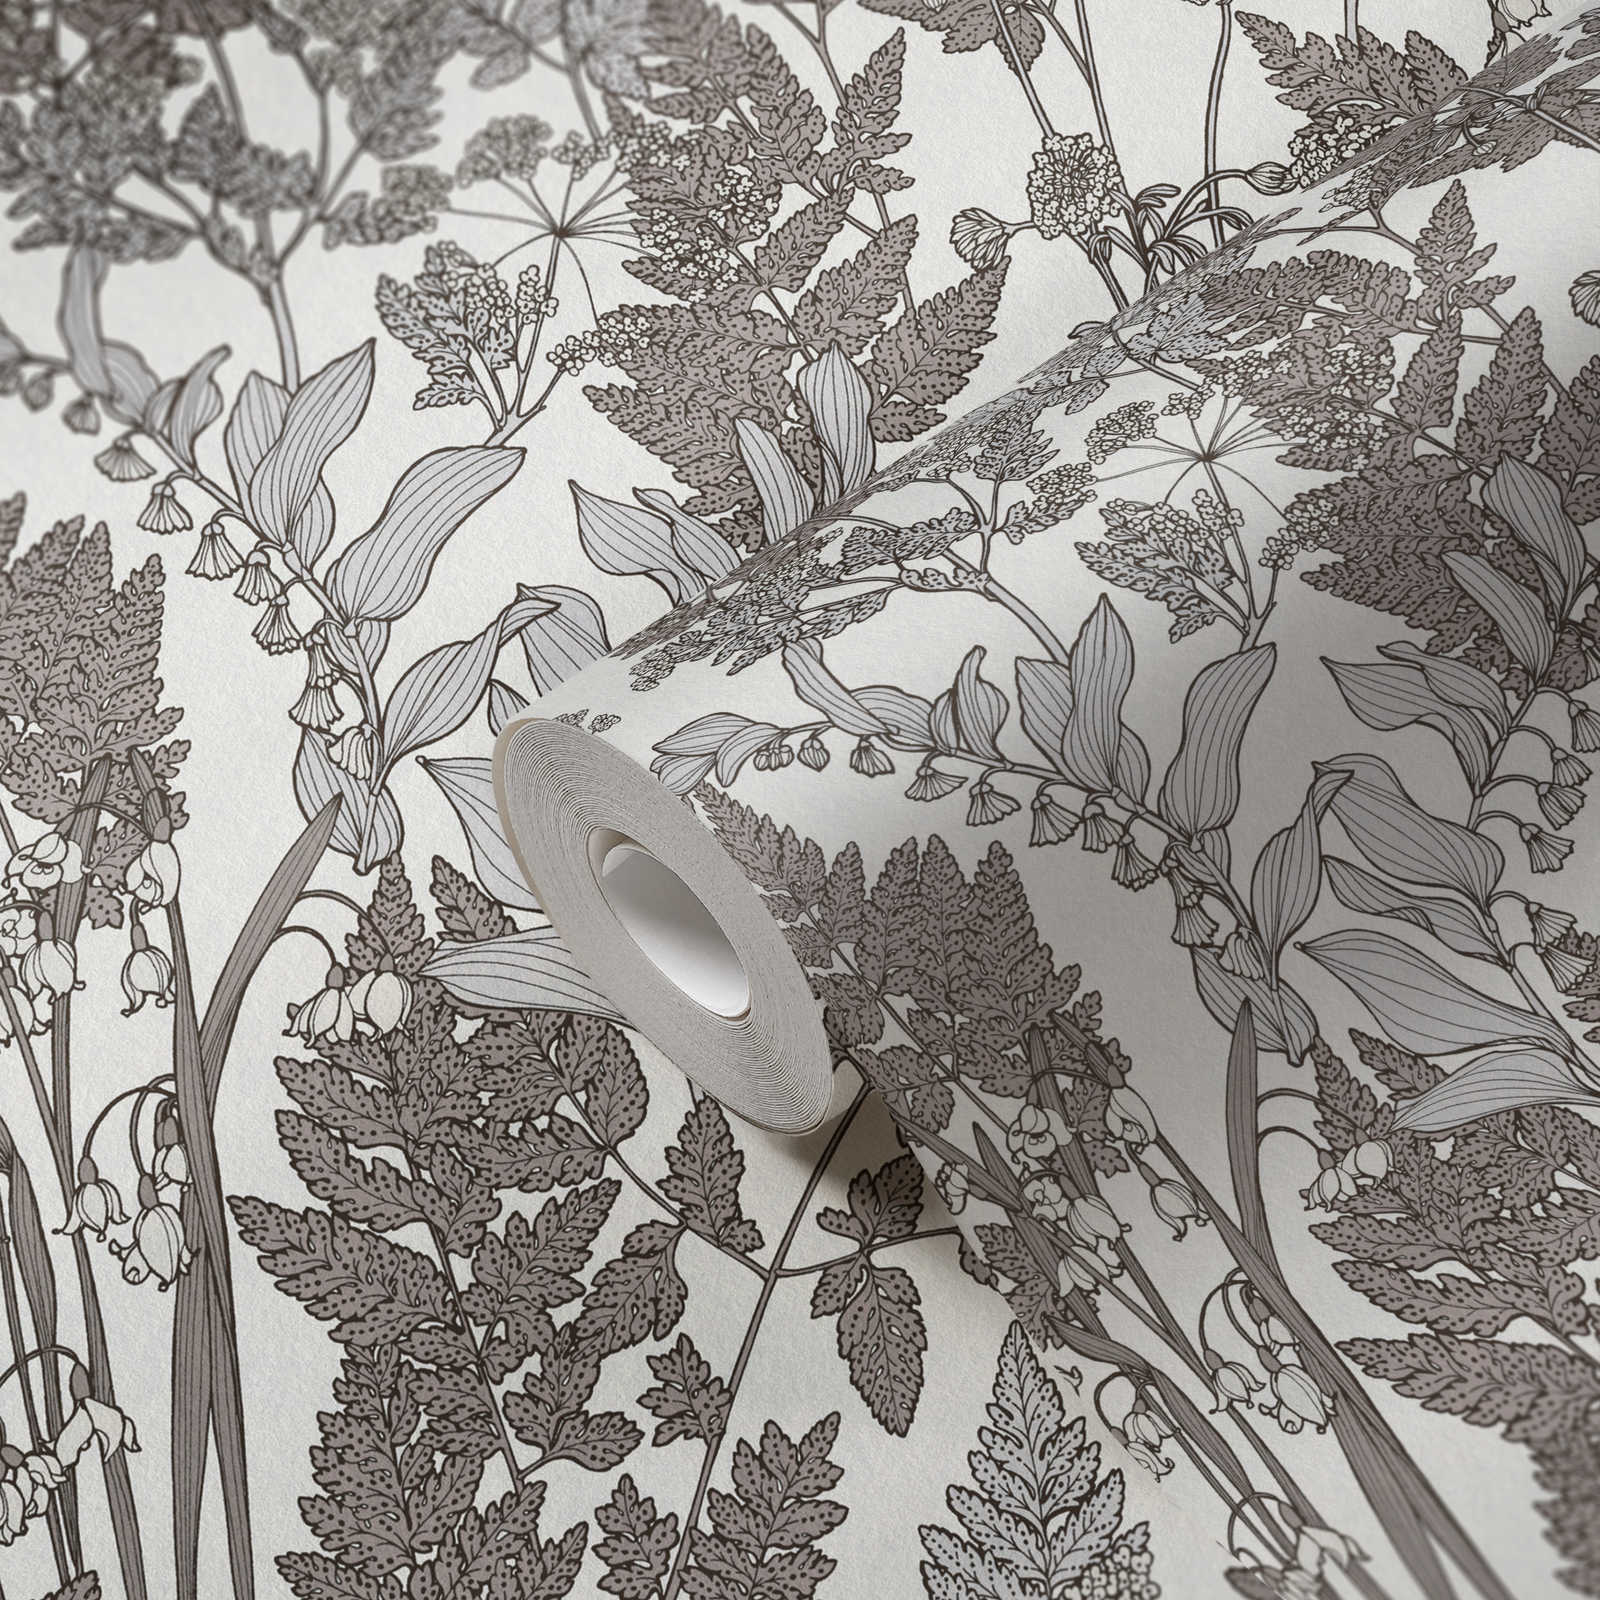             Natuurbehang bladeren & bloesems in moderne landelijke stijl - grijs, wit
        